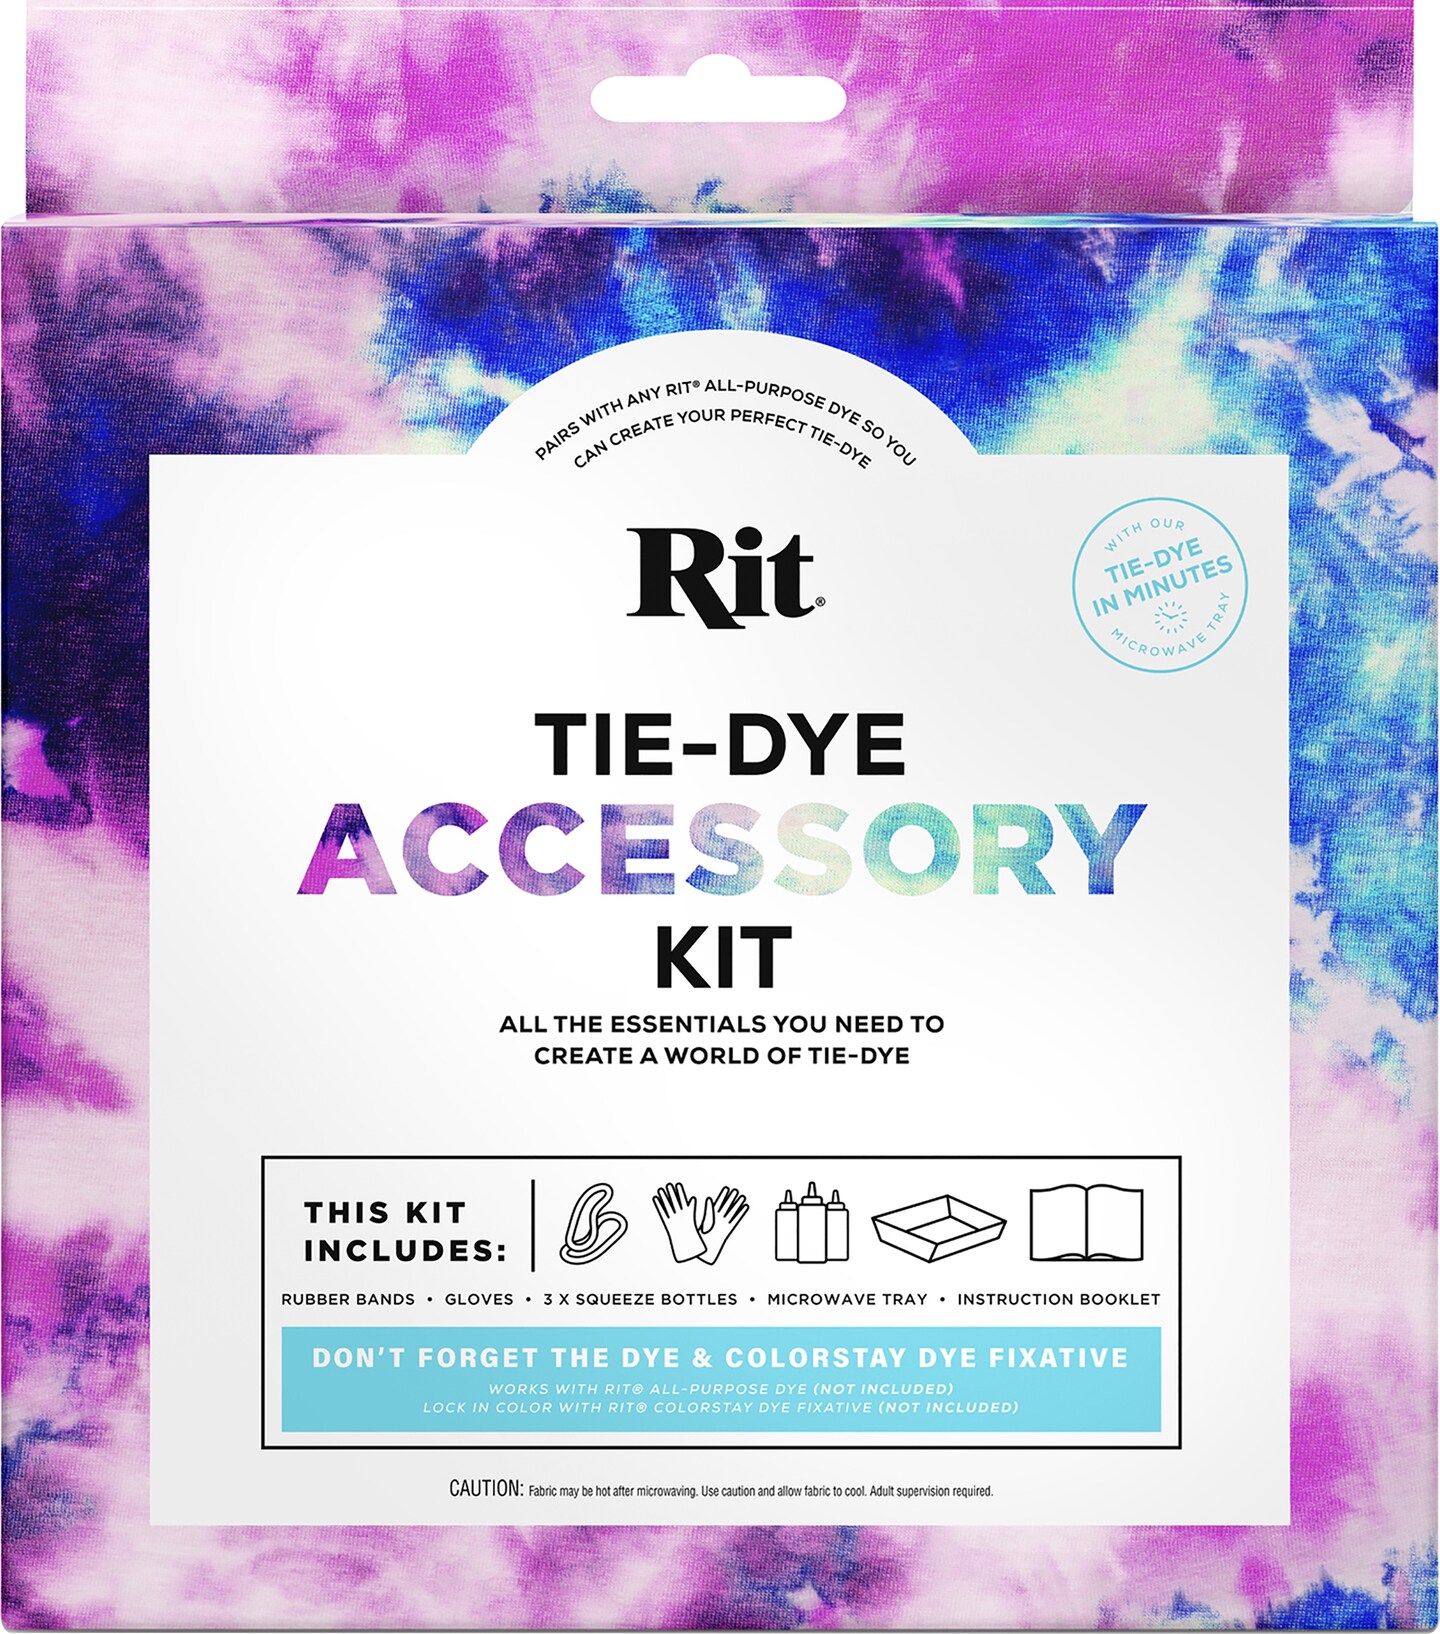 Rit Tie-Dye Accessory Kit - MICA Store